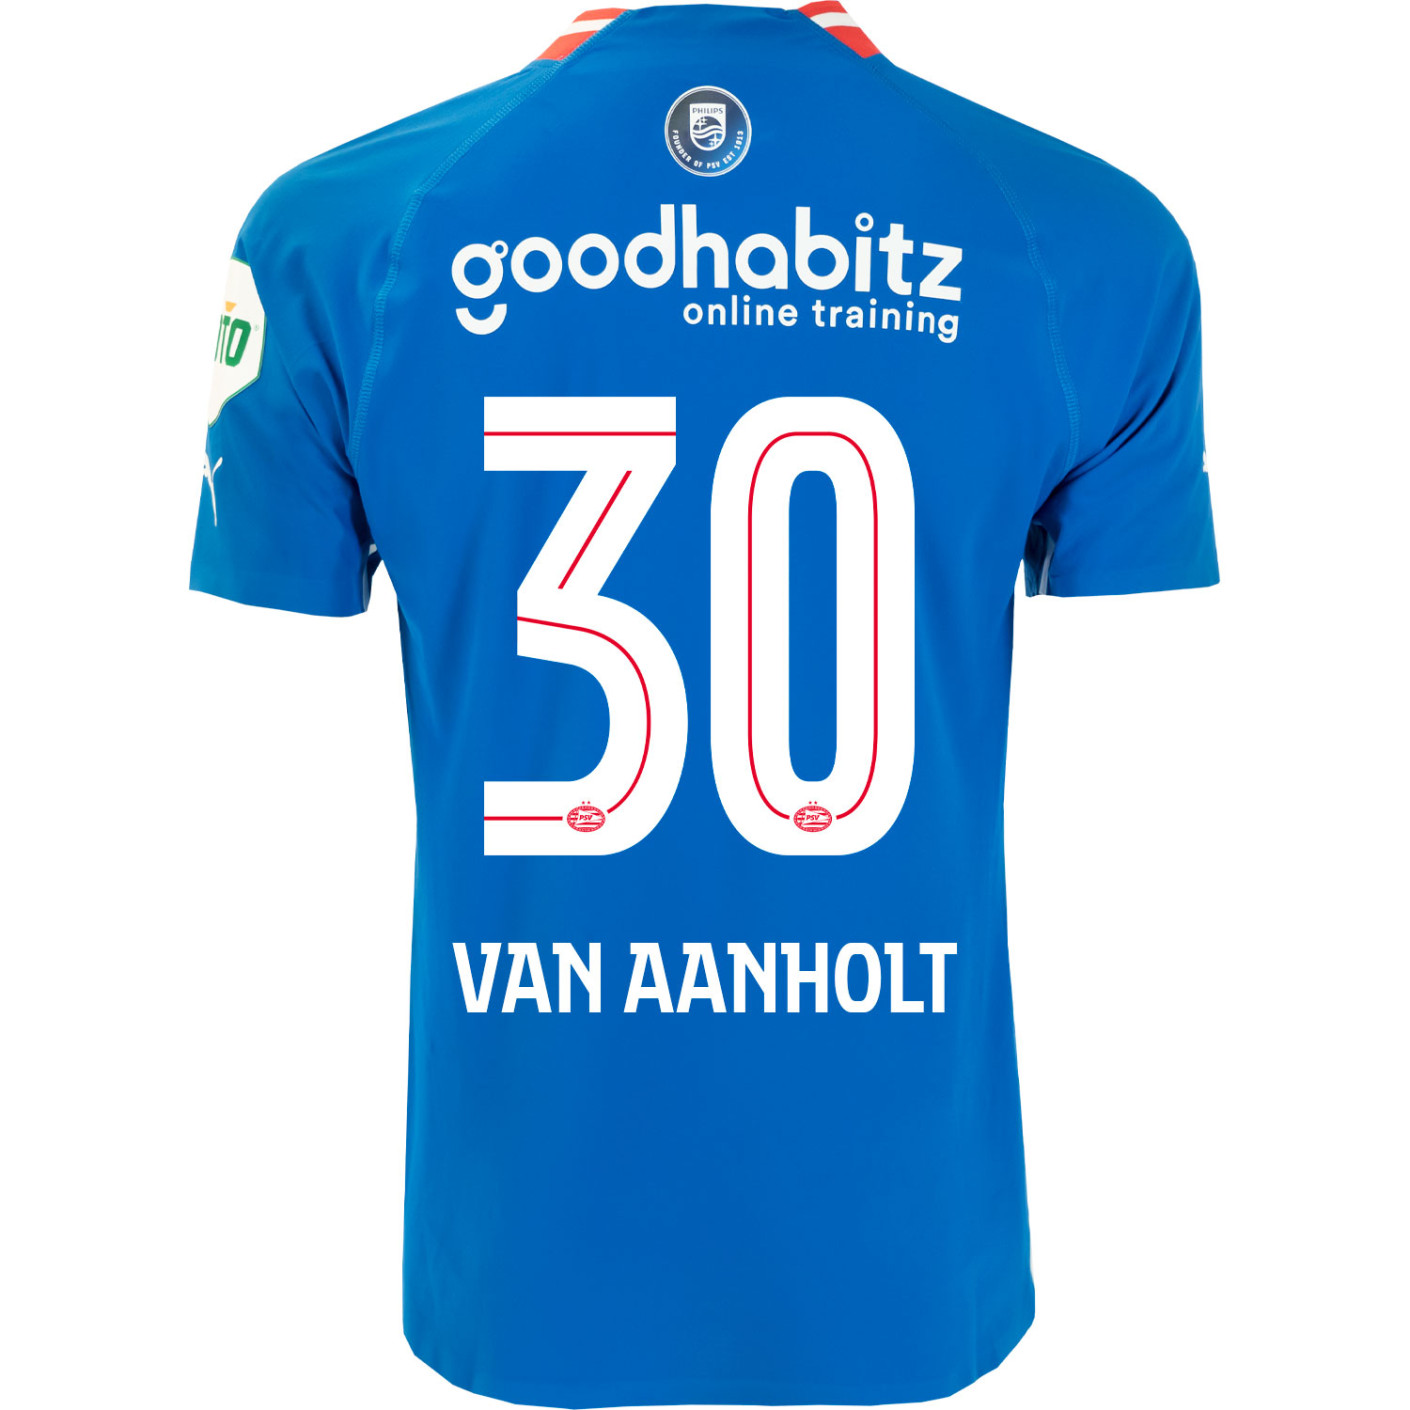 PSV van Aanholt 30 Derde Shirt Authentic 22/23